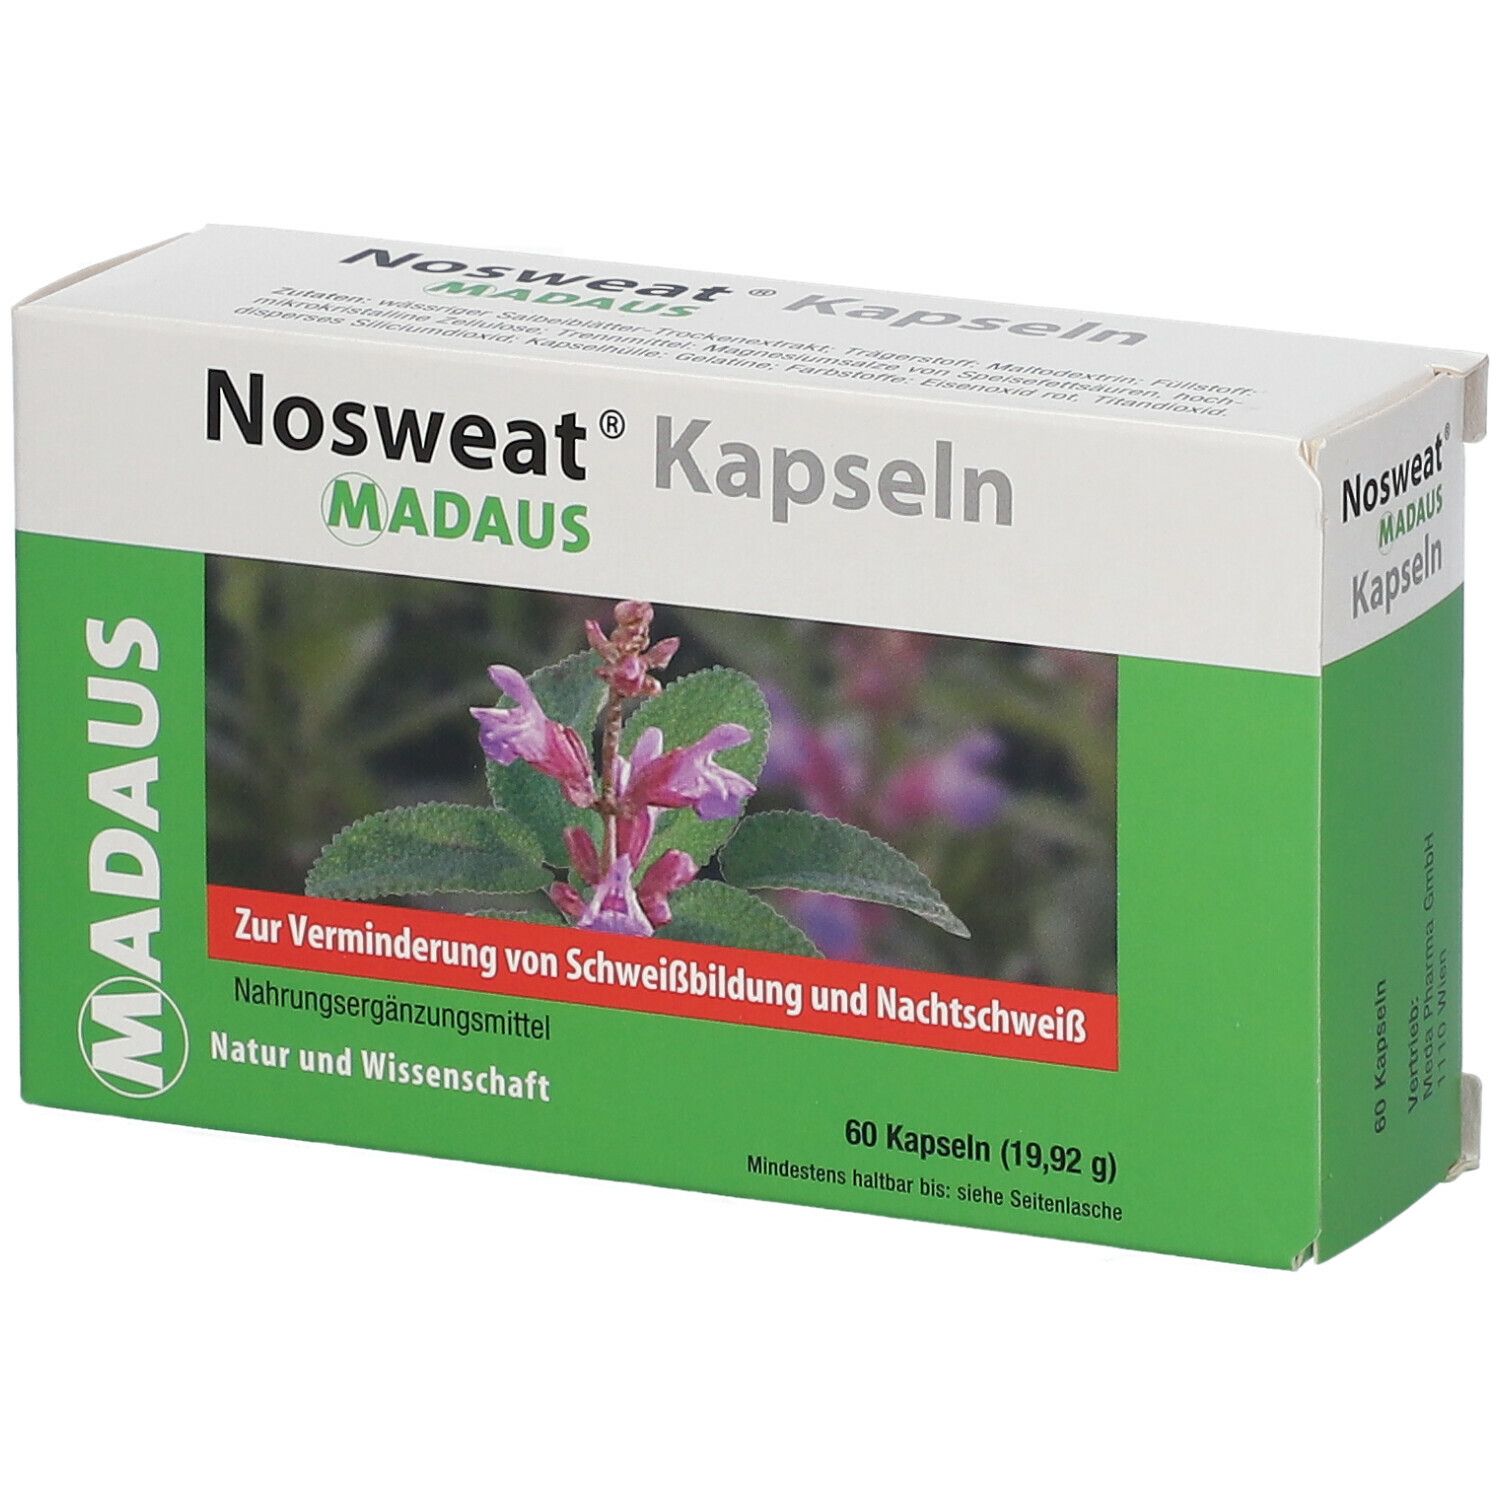 Image of Nosweat® Kapseln